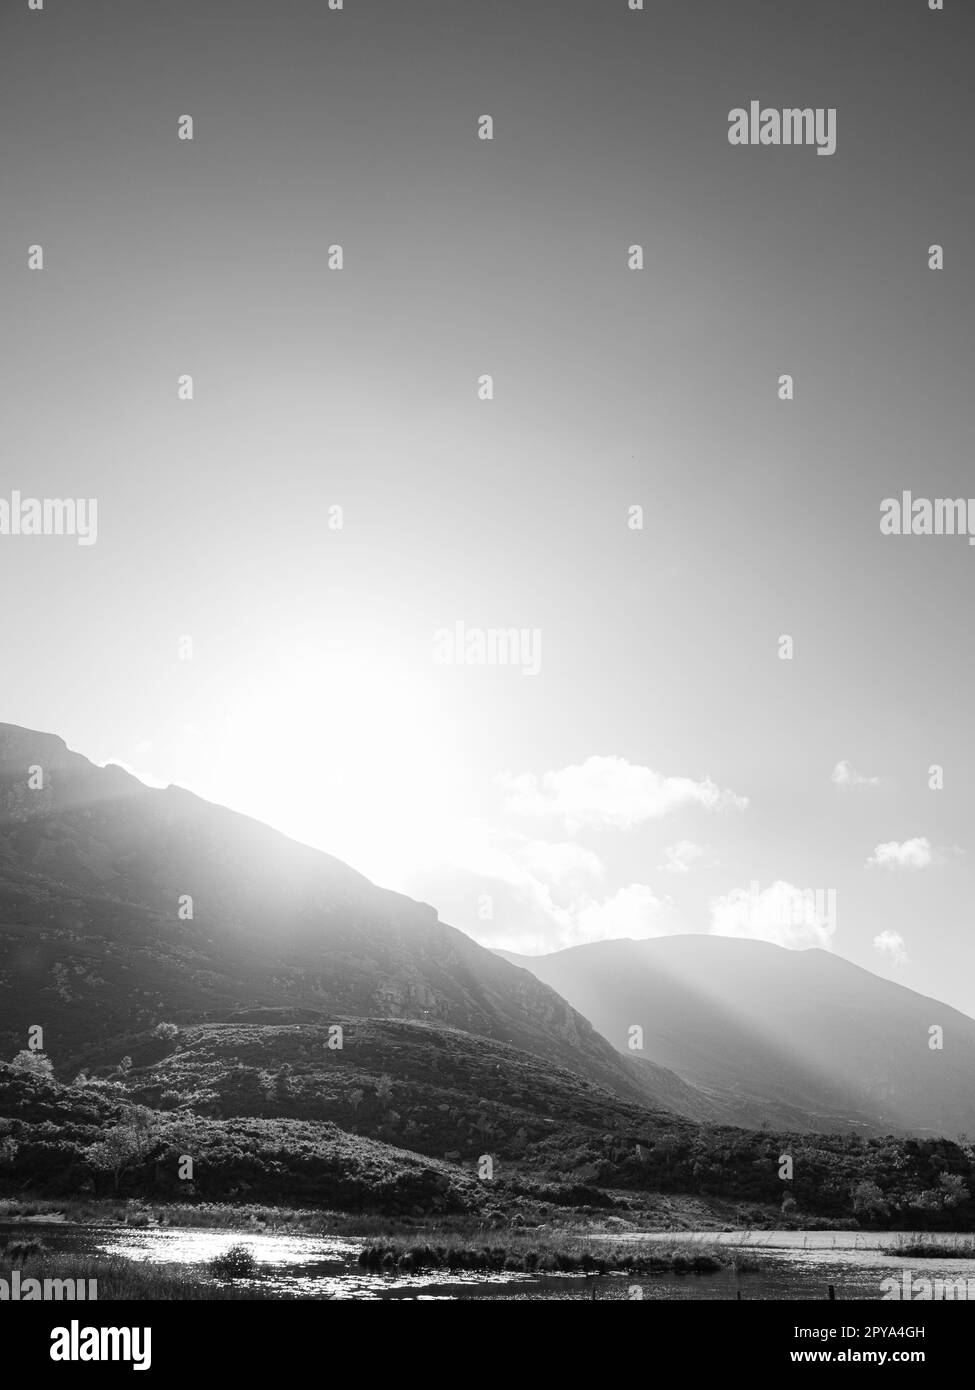 Vue depuis le Gap of Dunloe dans le comté de Kerry, en Irlande. Les rayons du soleil se dirigent sur les montagnes et dans la vallée en contrebas. Banque D'Images